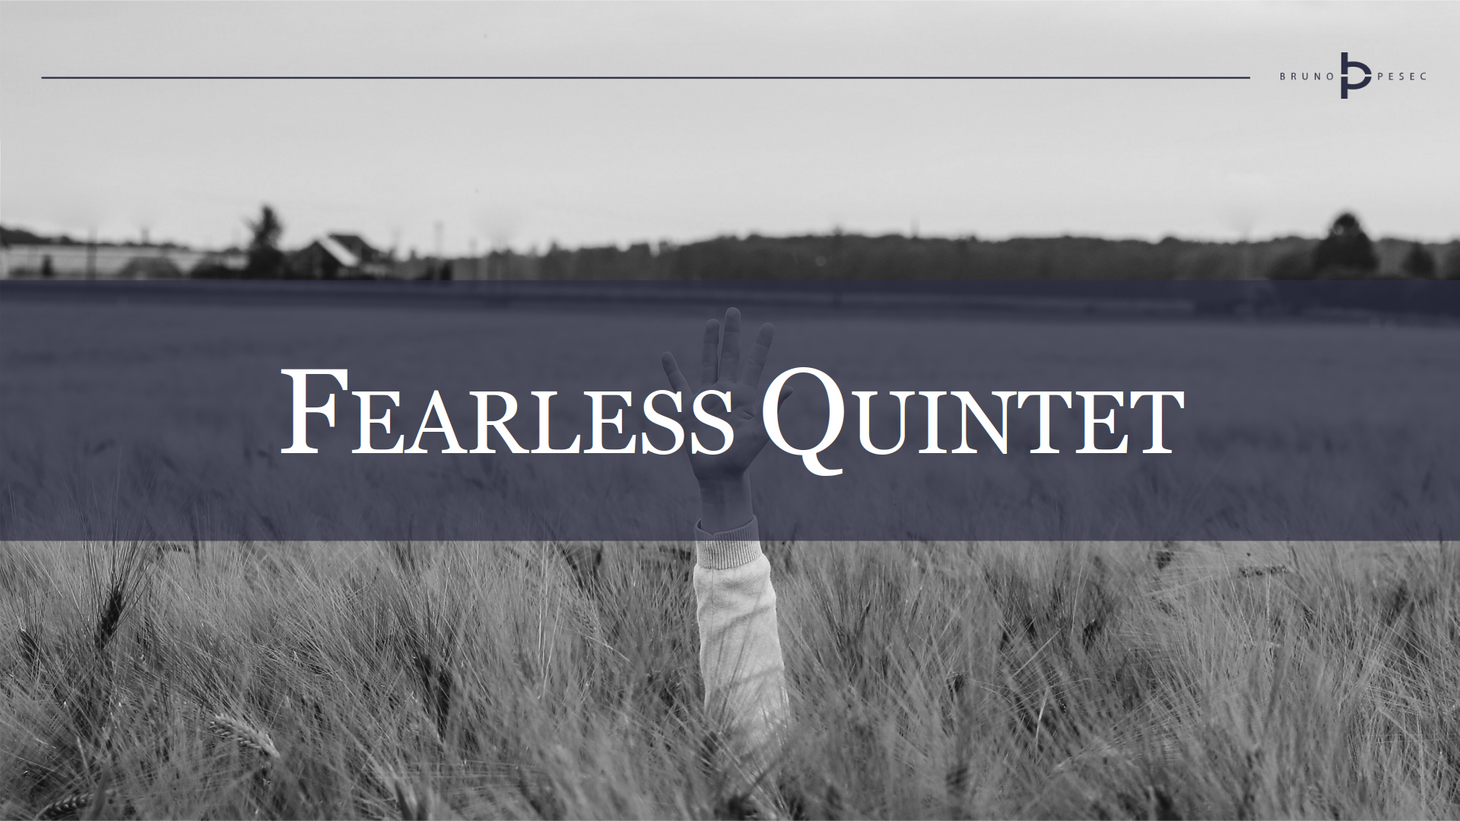 Fearless quintet